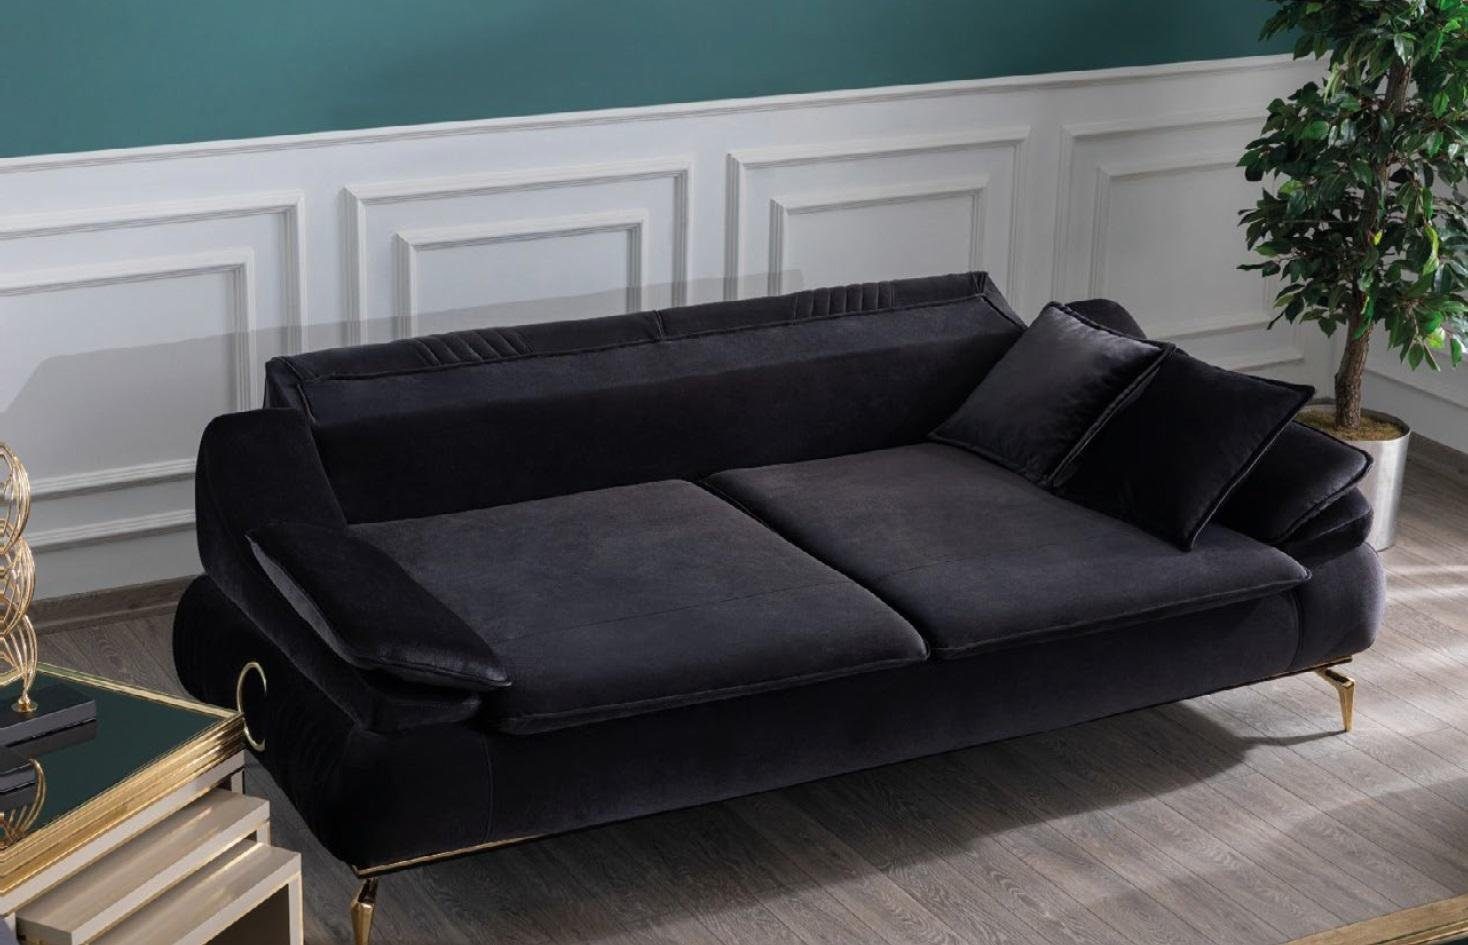 JVmoebel 3-Sitzer Elegantes Wohnzimmer Sofa 3 Sitzer Schwarz Design, Made in Europe